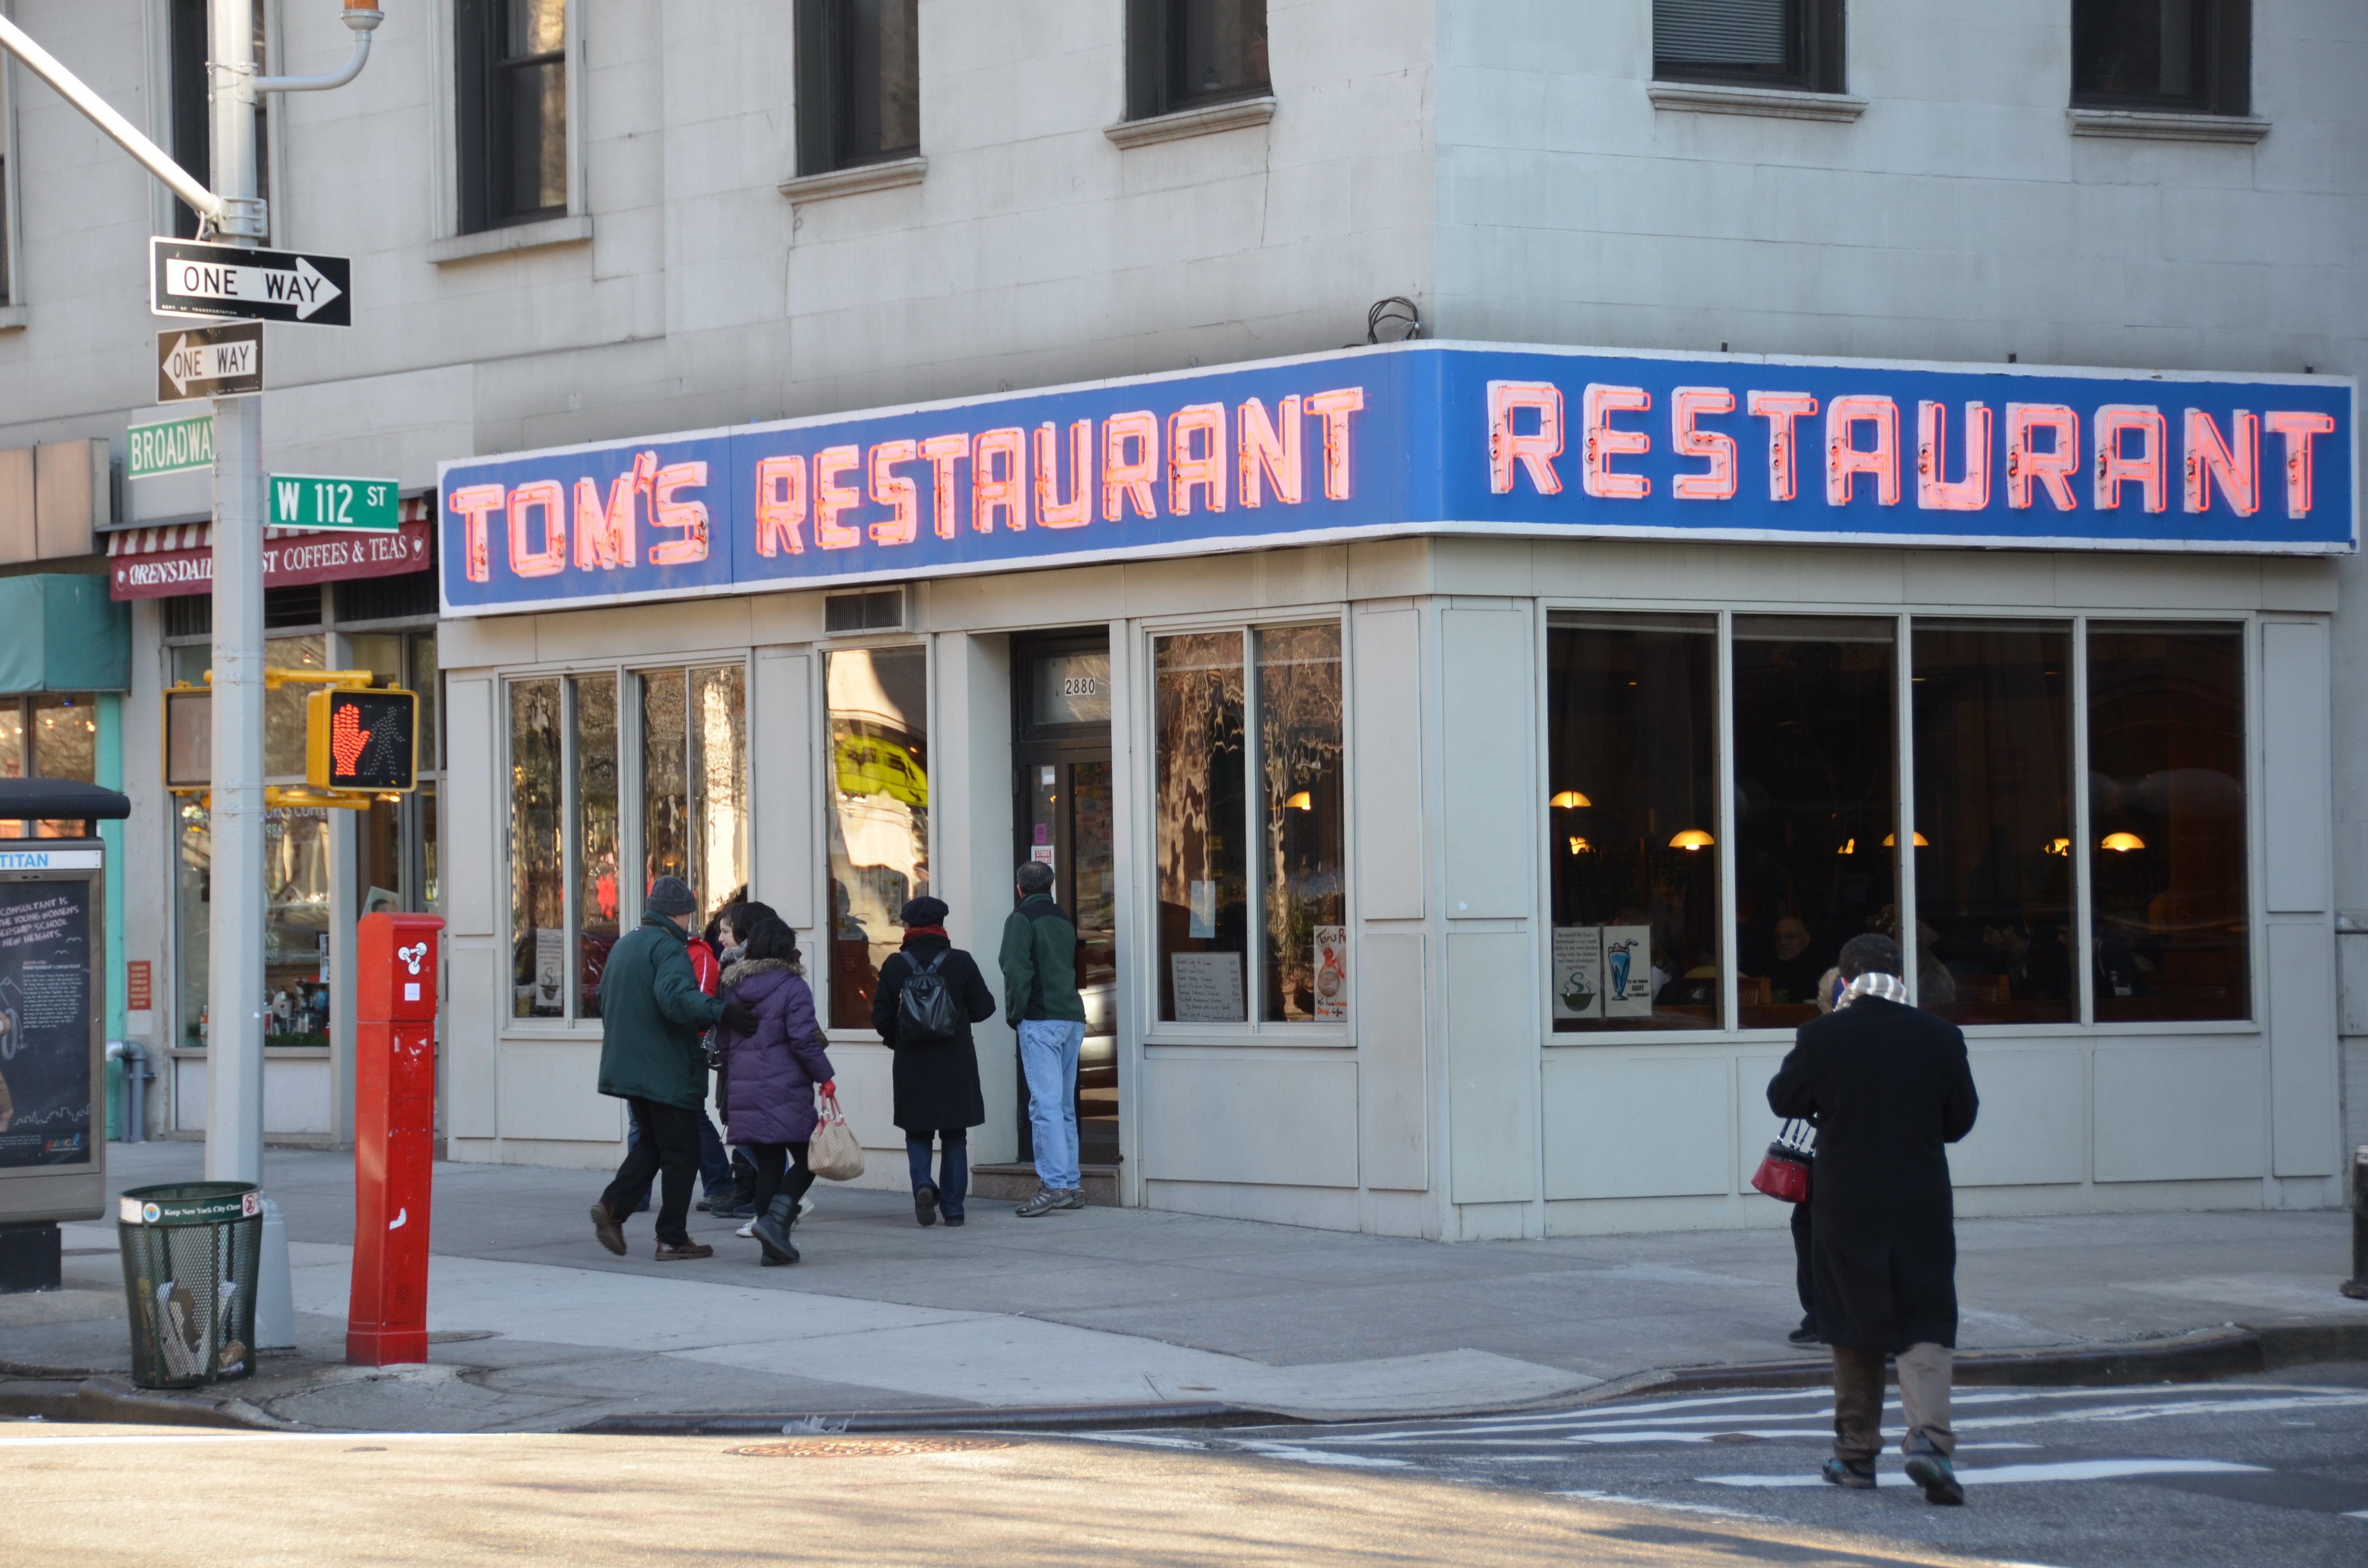 Tom's Restaurant from Seinfeld TV show for Blog